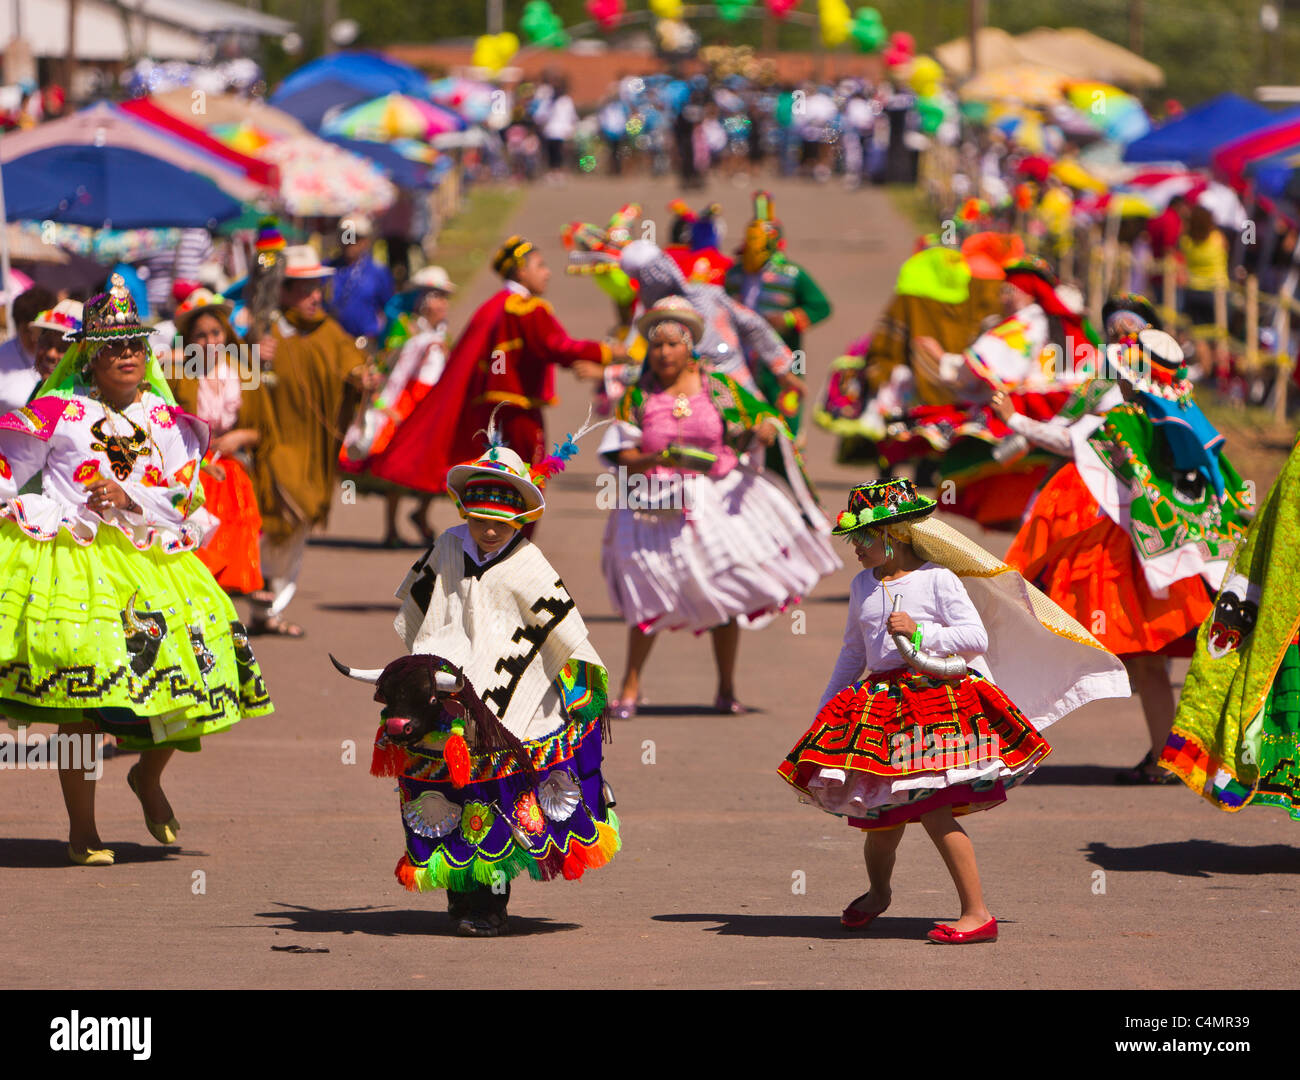 MANASSAS, VIRGINIA, USA - bolivianischen Folklife Festival Parade mit Tänzer in Tracht. Stockfoto